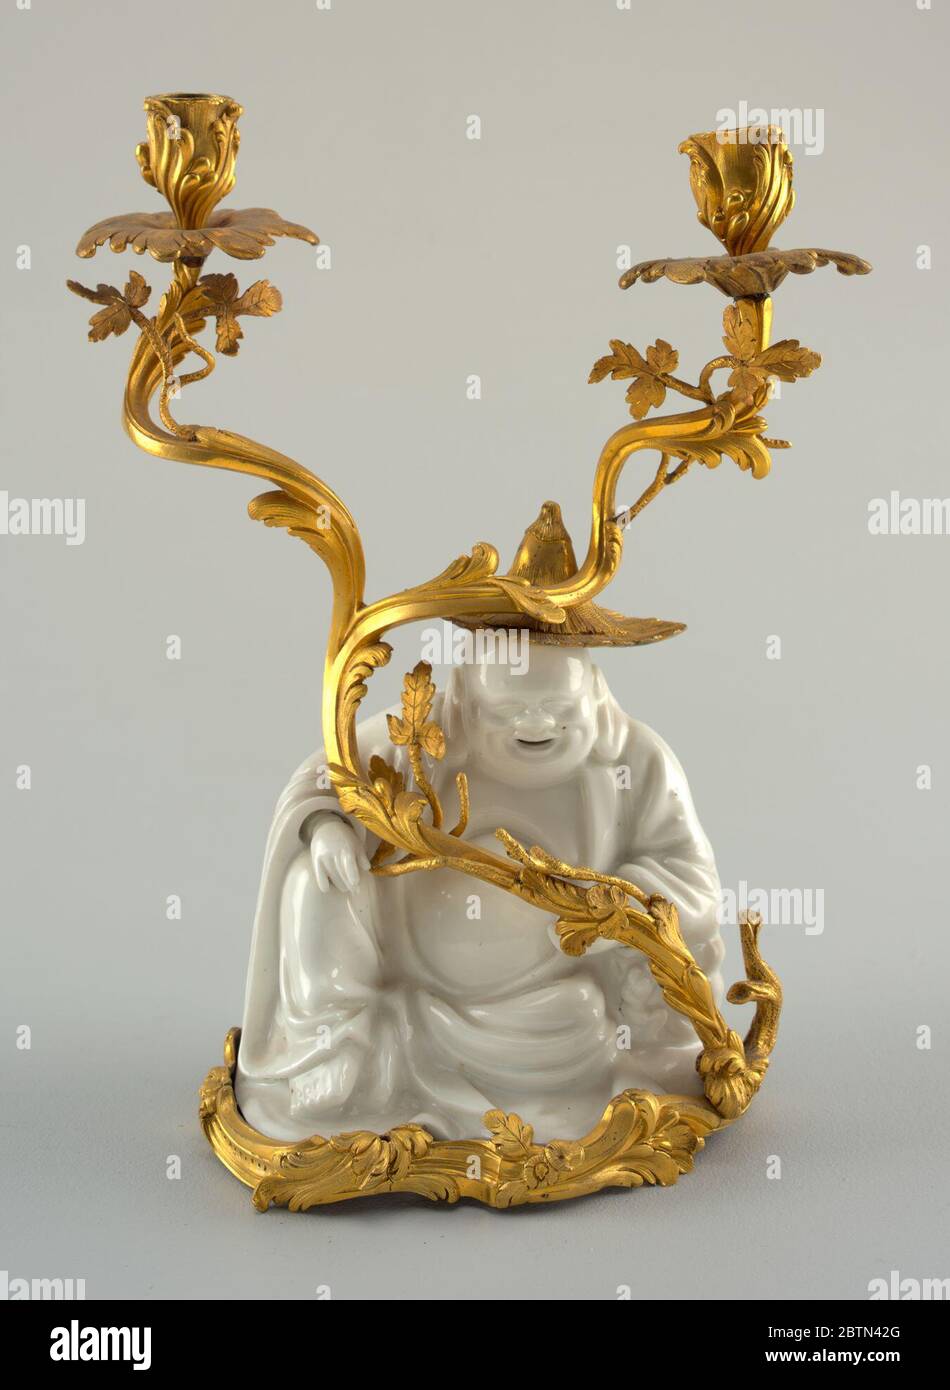 Ein Paar TwoLight Candelabra. Forschung in ProgressSeated Figur ("Lachender buddha") in glasierten weißen Porzellan mit einem wirbelnden, belaubten, zweigegabelten ormolu Zweig endet in zwei Kerzendosen. Stockfoto